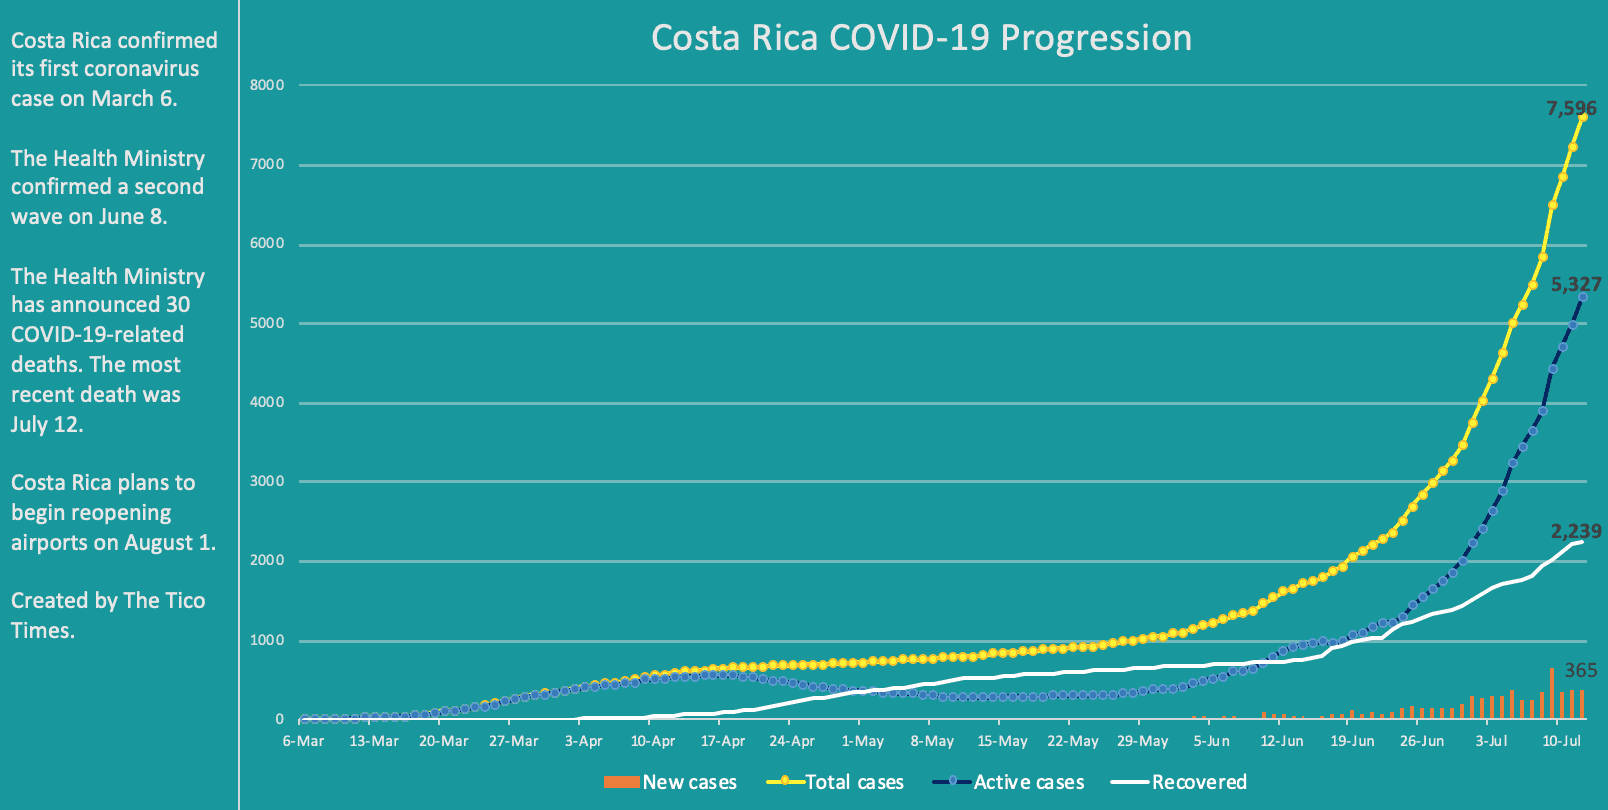 Costa Rica coronavirus data for July 12, 2020